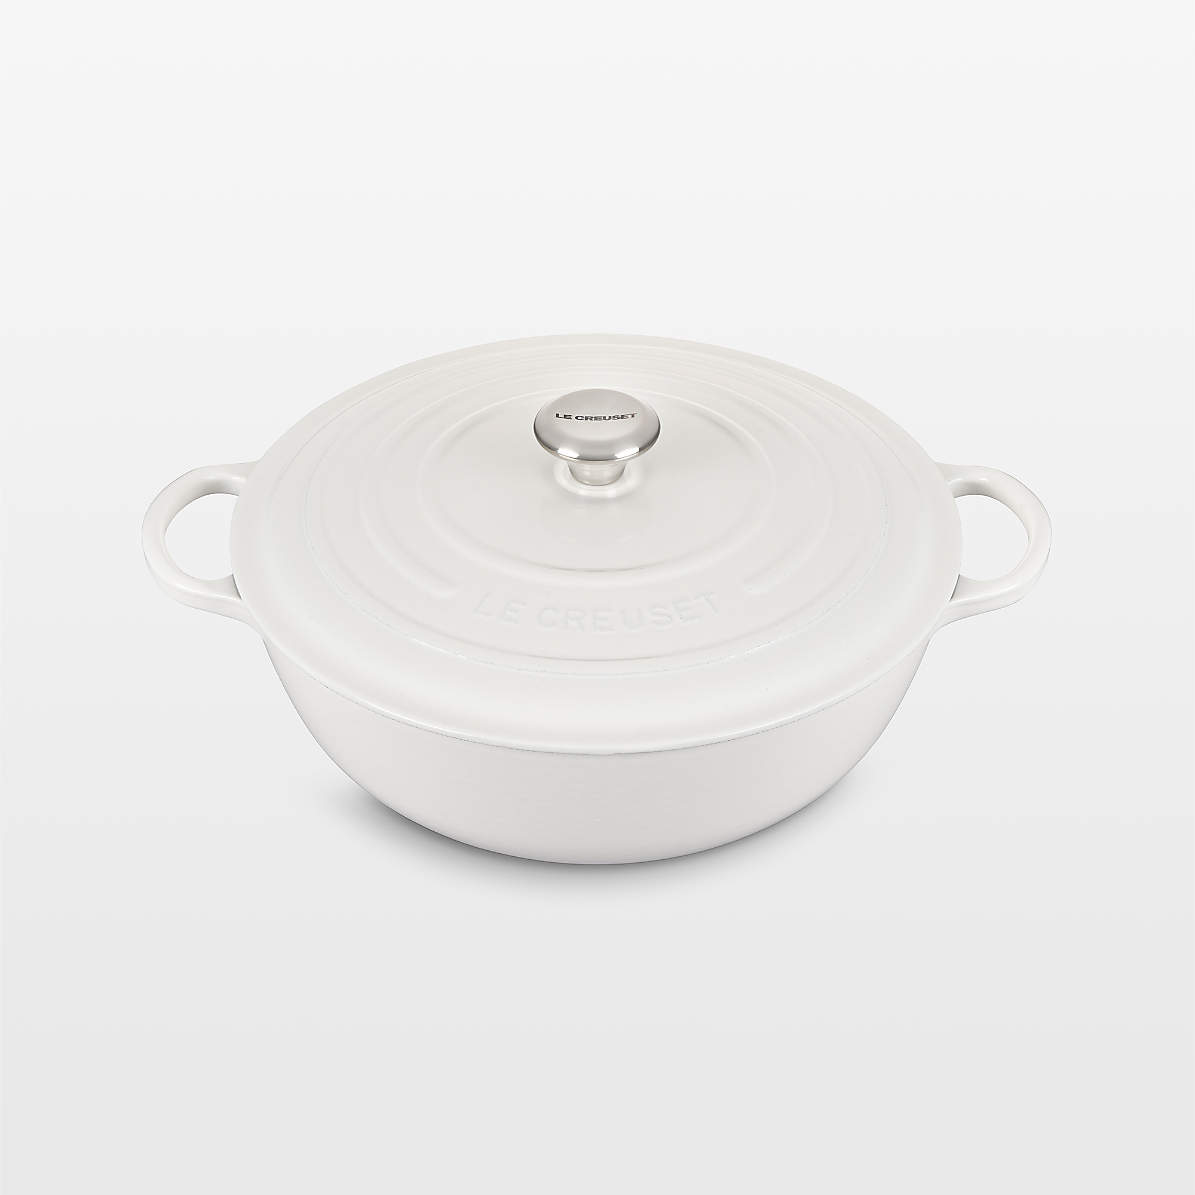 Le Creuset 5 Piece Cast Iron Cookware Set - White - Loft410